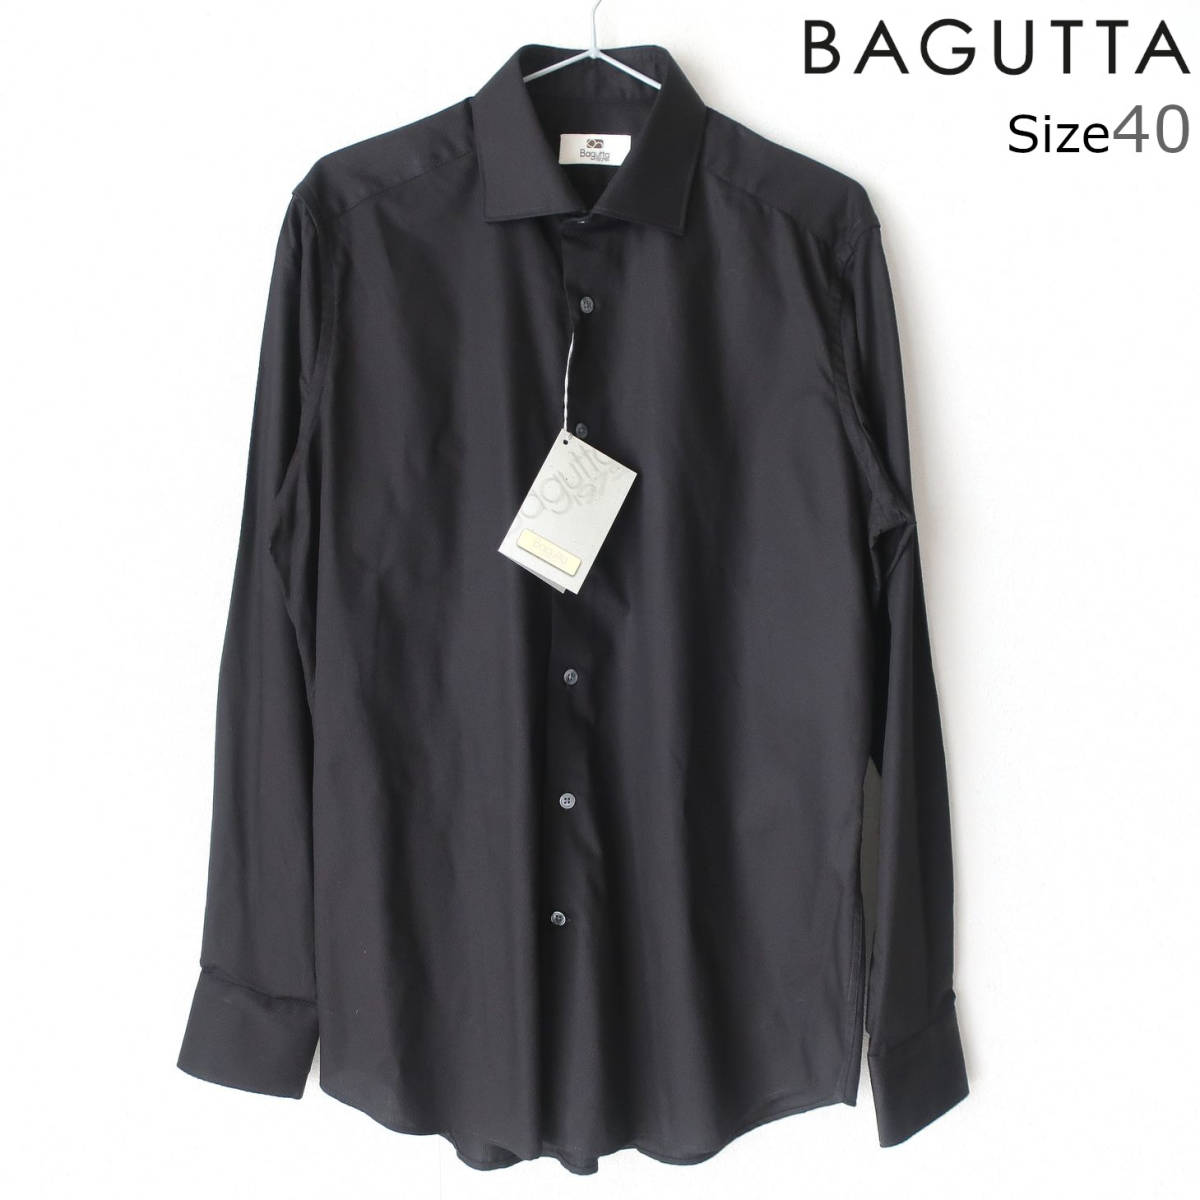 新品 未使用 BAGUTTA バグッタ 最高級 メンズ ドレスシャツ 織柄 シャドー柄 長袖シャツ ボタン シャツ 黒 ブラック 40 Lサイズ